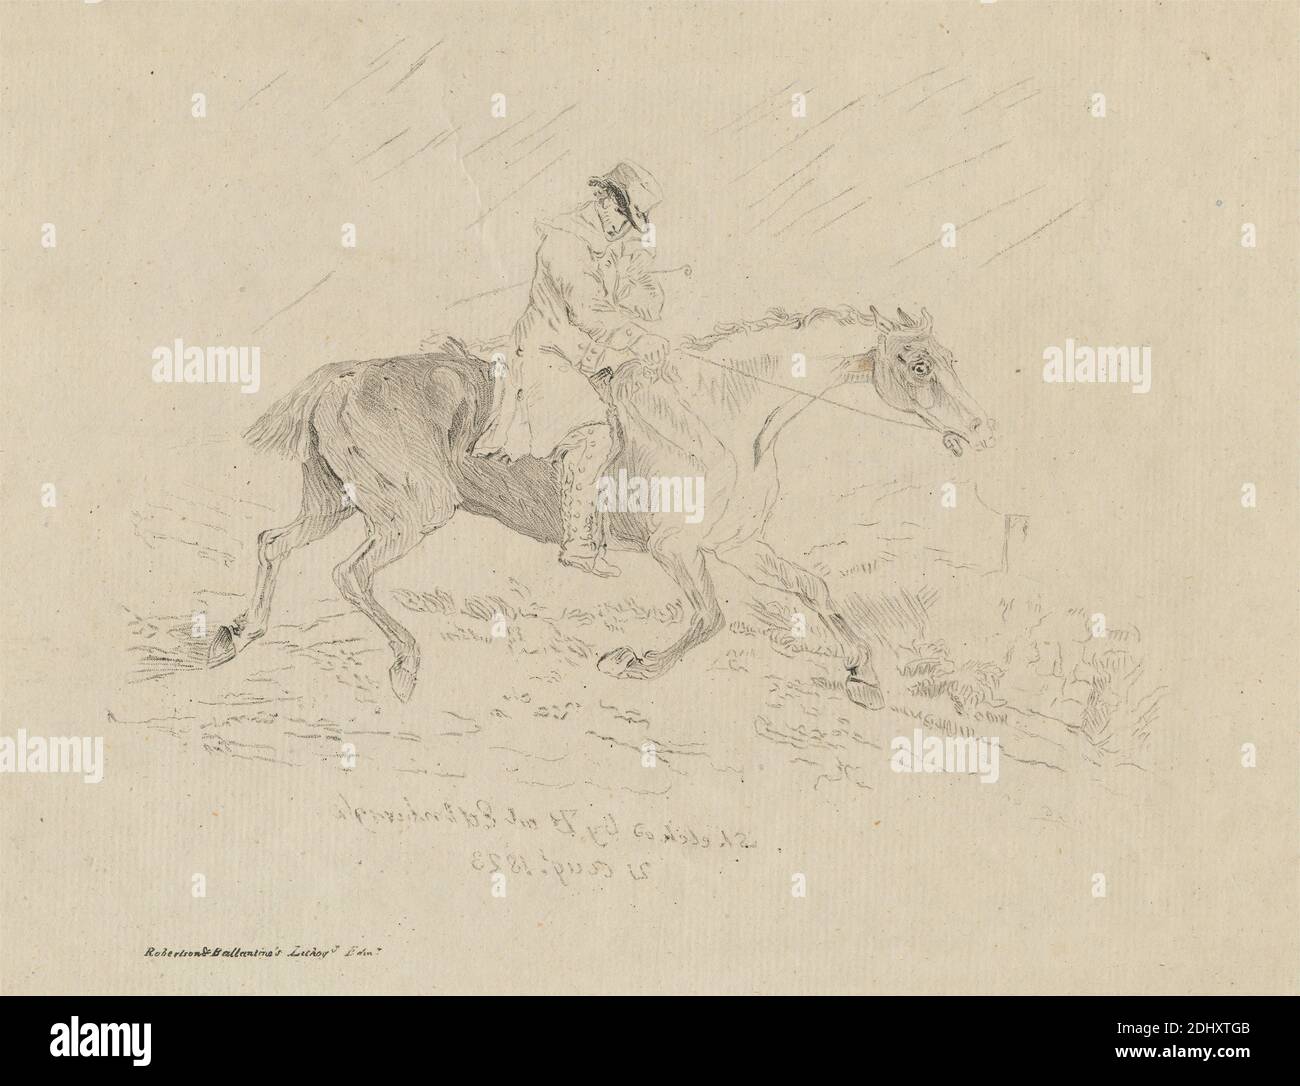 The Cadger's Trab, Print Made by Thomas Bewick, 1753–1828, British, Published by Robertson & Ballantine Lithography, Active 1820, British, 1823, Lithograph auf Medium, leicht strukturiert, beigefarbenes Papier, Blatt: 8 1/8 x 10 1/4 Zoll (20.7 x 26 cm) und Bild: 5 1/2 x 7 1/16 Zoll (14 x 18 cm), Tierkunst, Zaumzeug, Mantel, Reiten, Gras, Pferd (Tier), Reiten, Mann, Regen, Reiten, Reitstiefel, Reitkultur, Laufen, Sportkunst, Steigbügel, Hut, Traben, Peitsche Stockfoto